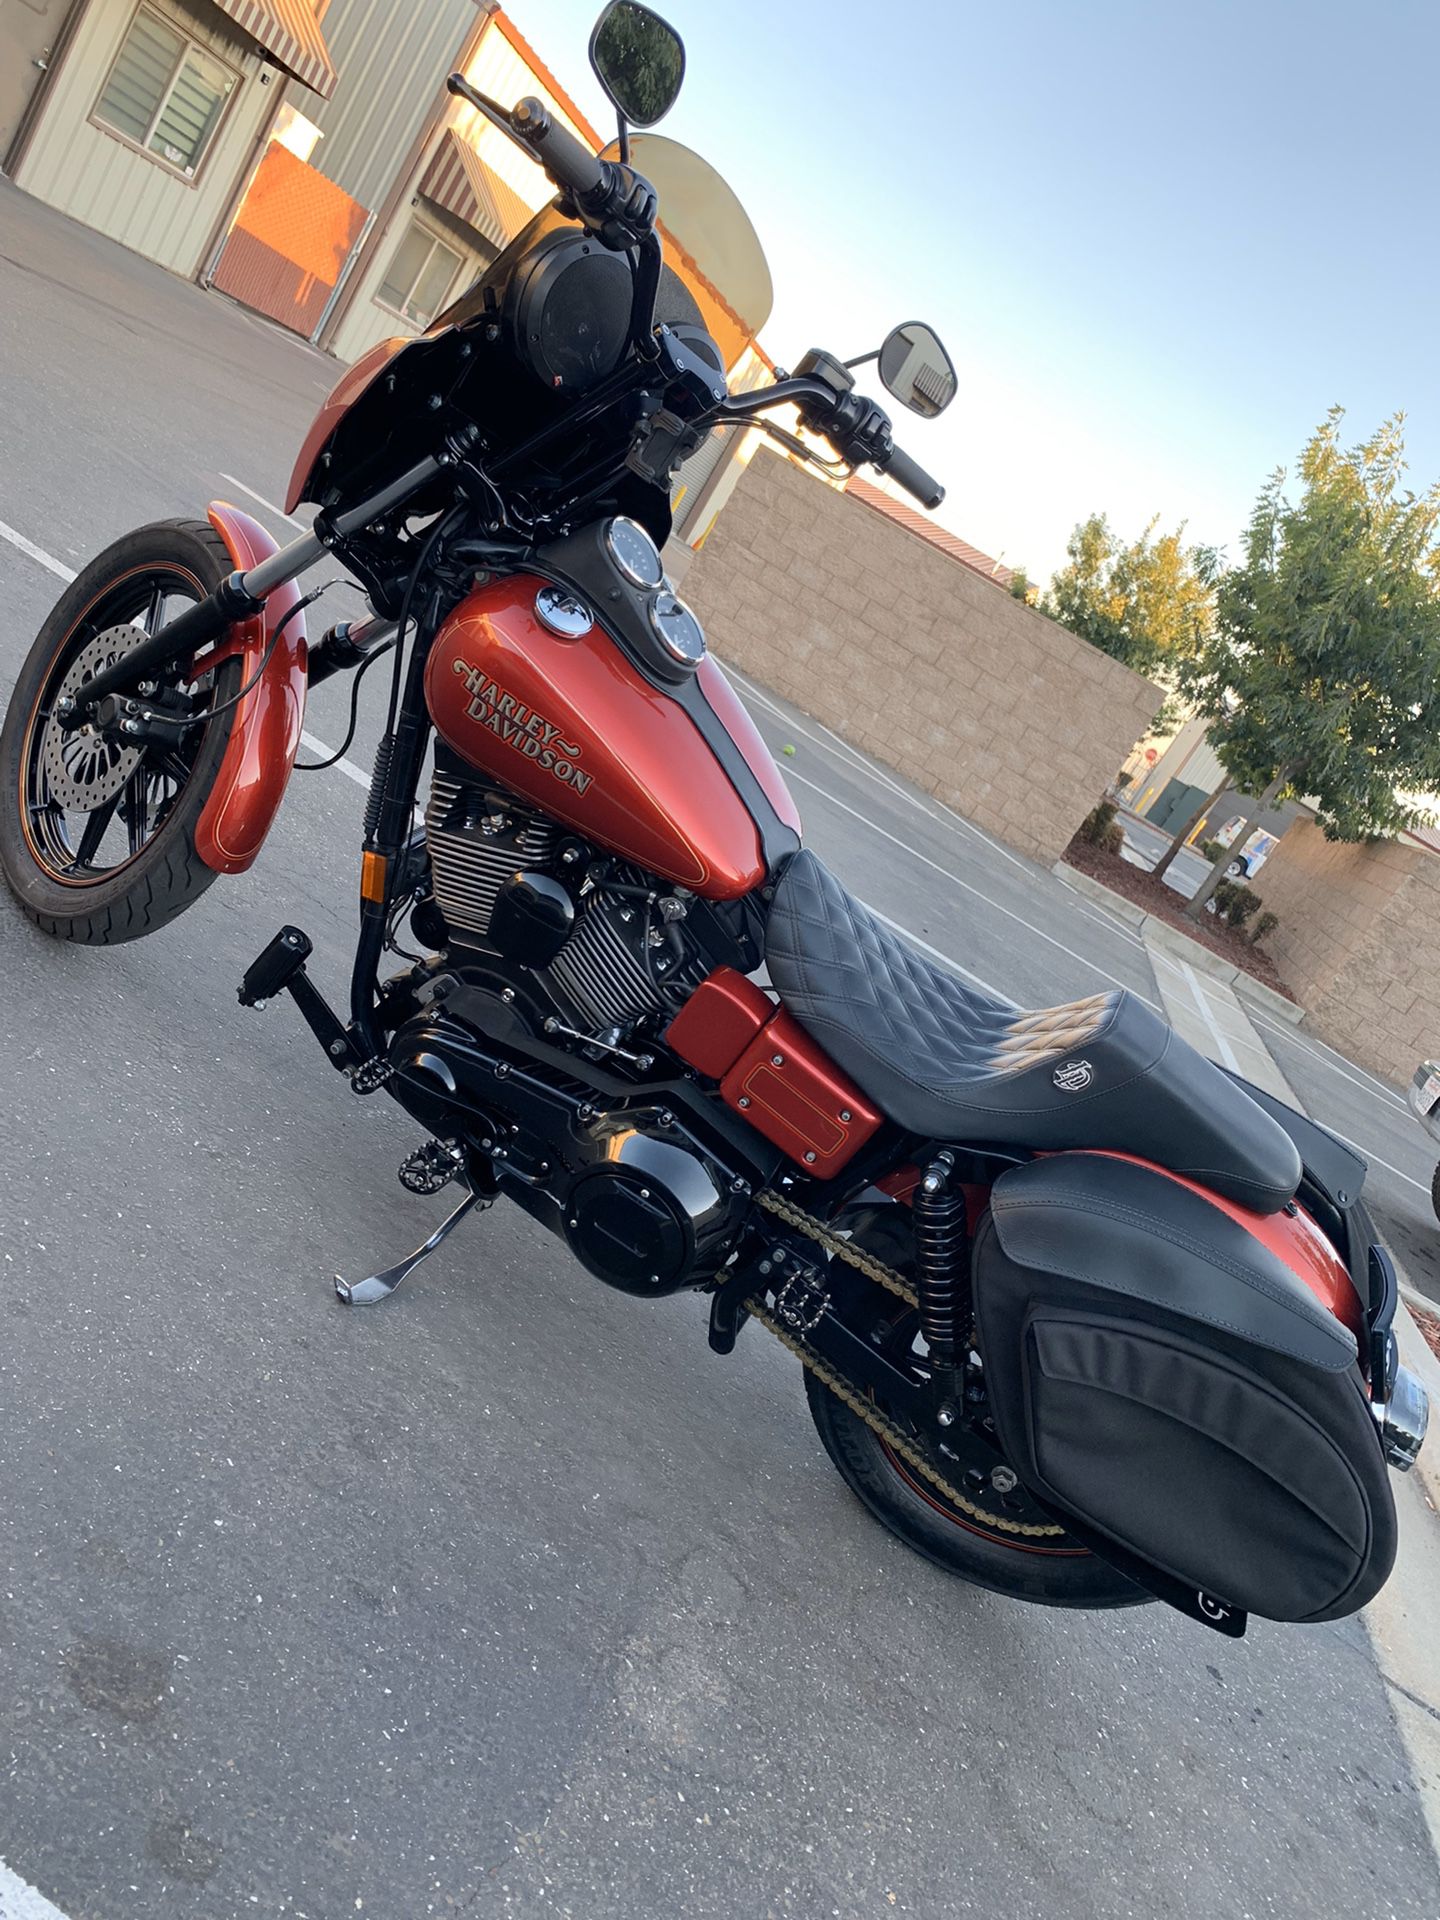 Harley Davidson- For sale